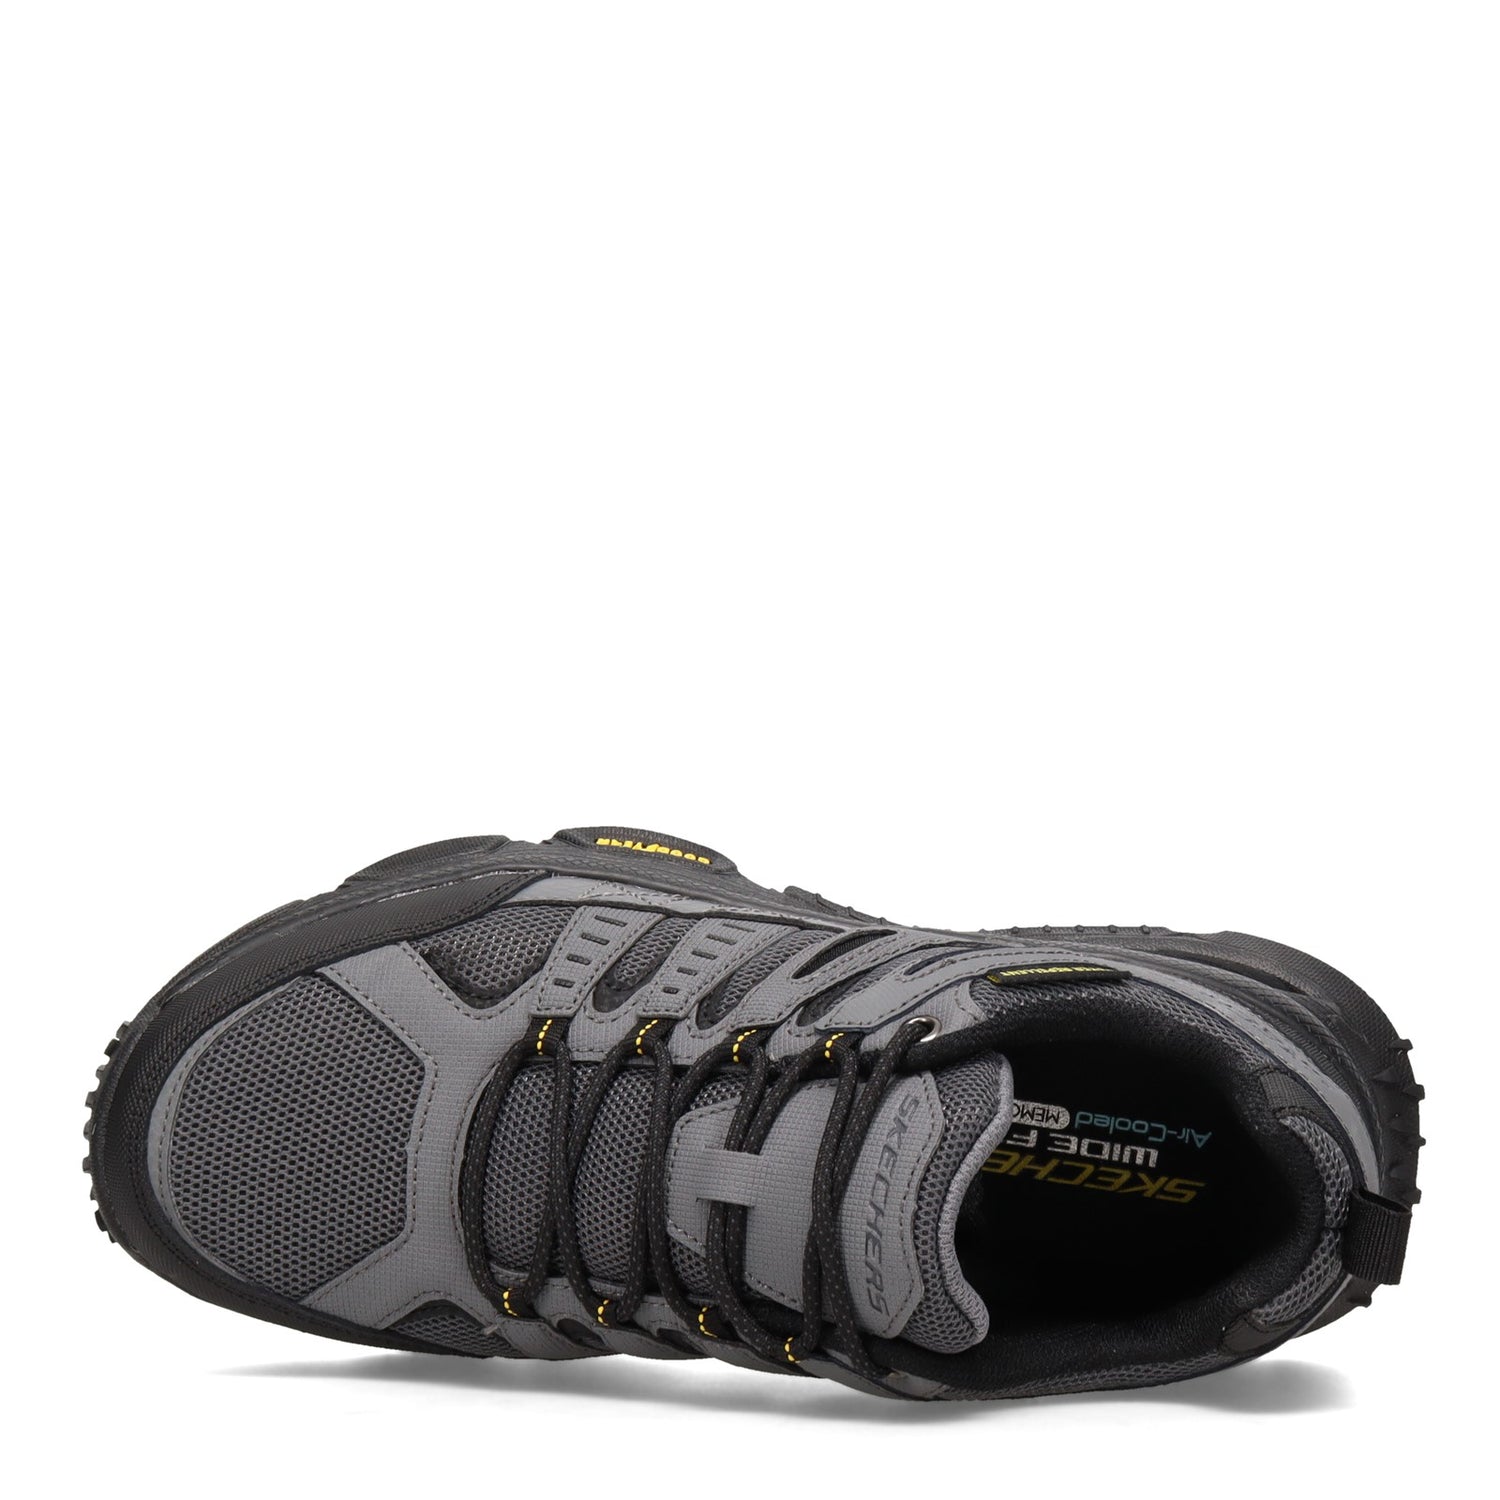 Peltz Shoes  Men's Skechers Skech-Air Envoy Walking Shoe - Wide Width Grey/Black 237214W-GYBK